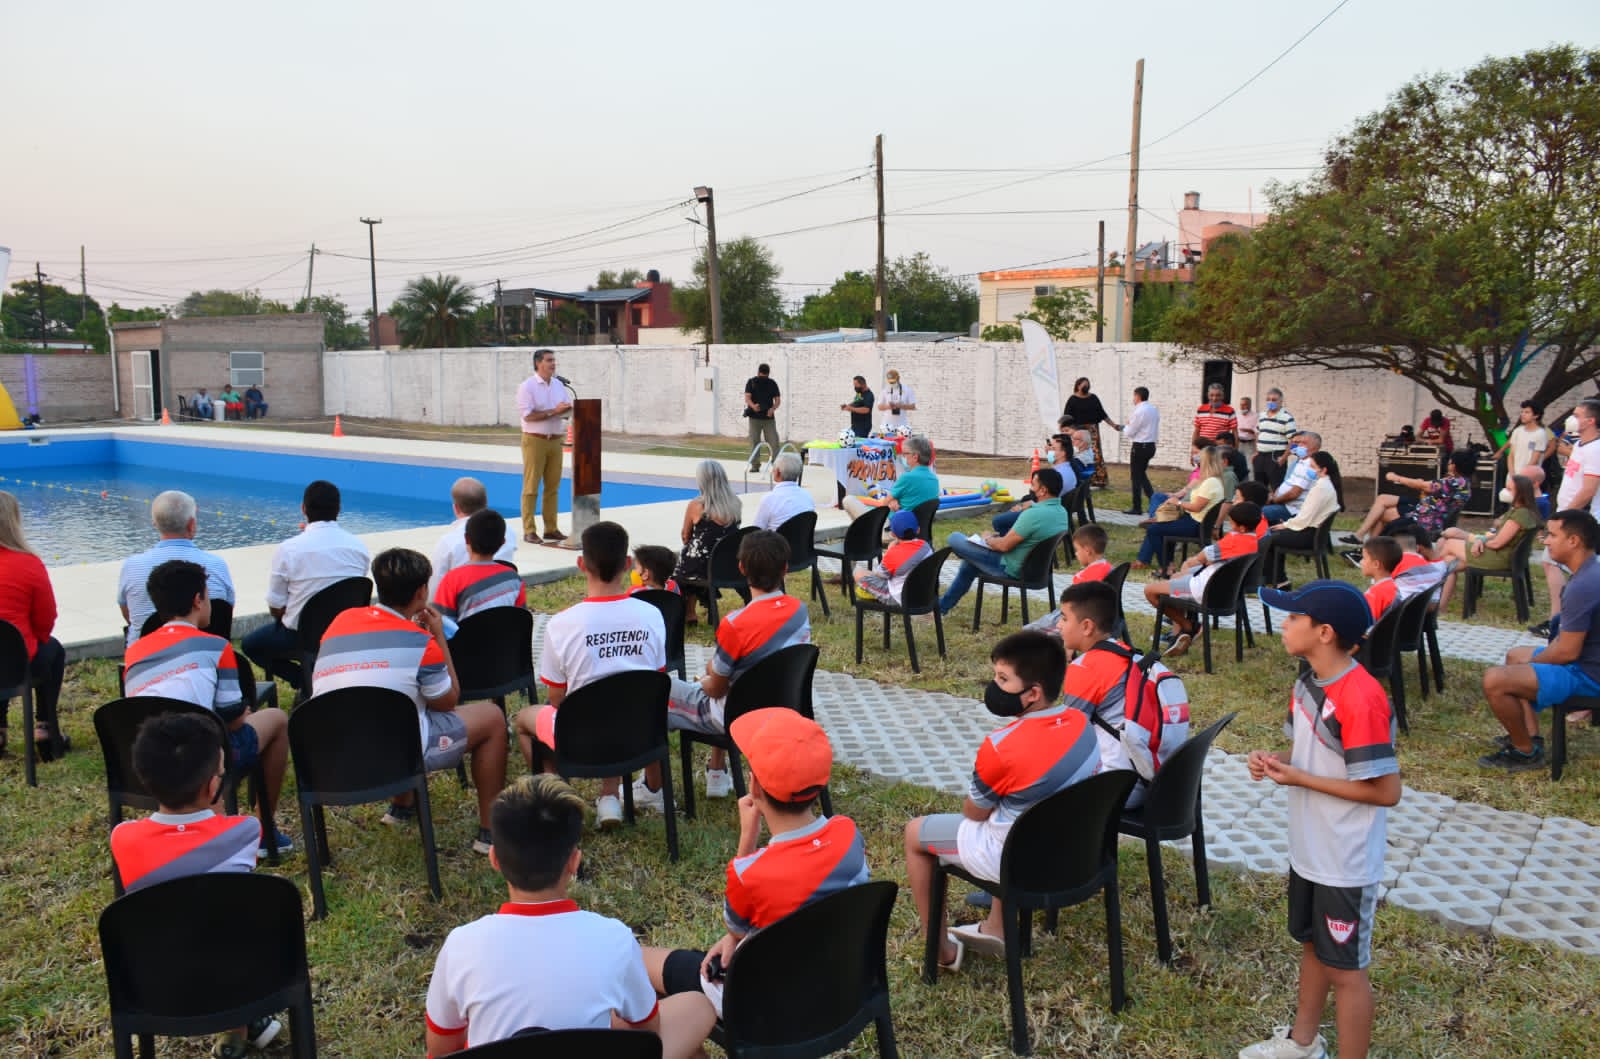 Inauguración de complejo natatorio  Sager: “Con un Estado presente, seguimos transformando a nuestros clubes deportivos y la calidad de vida de las y los chaqueños”